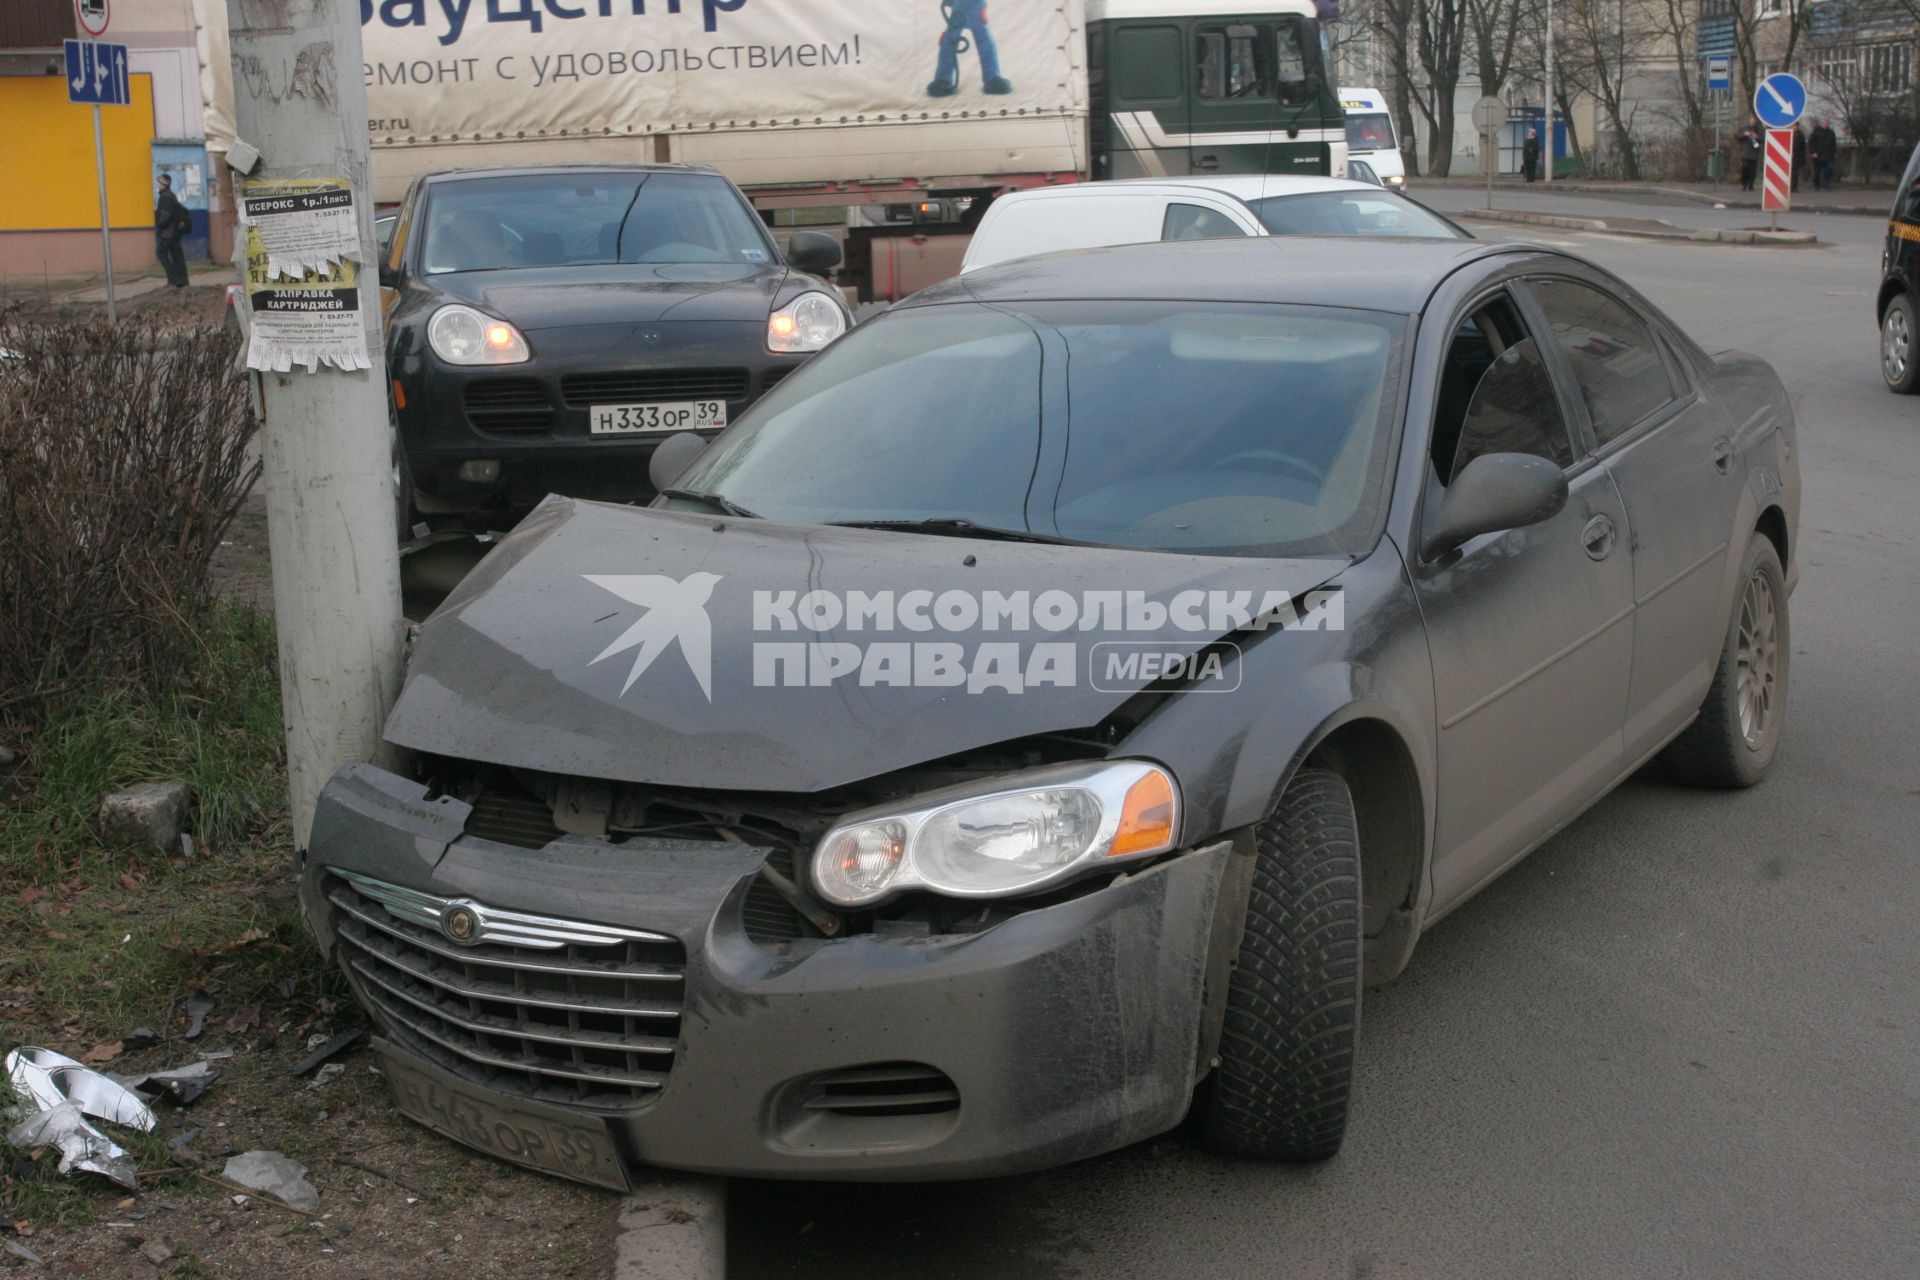 Калининград. Поврежденный в результате столкновения со столбом автомобиль.